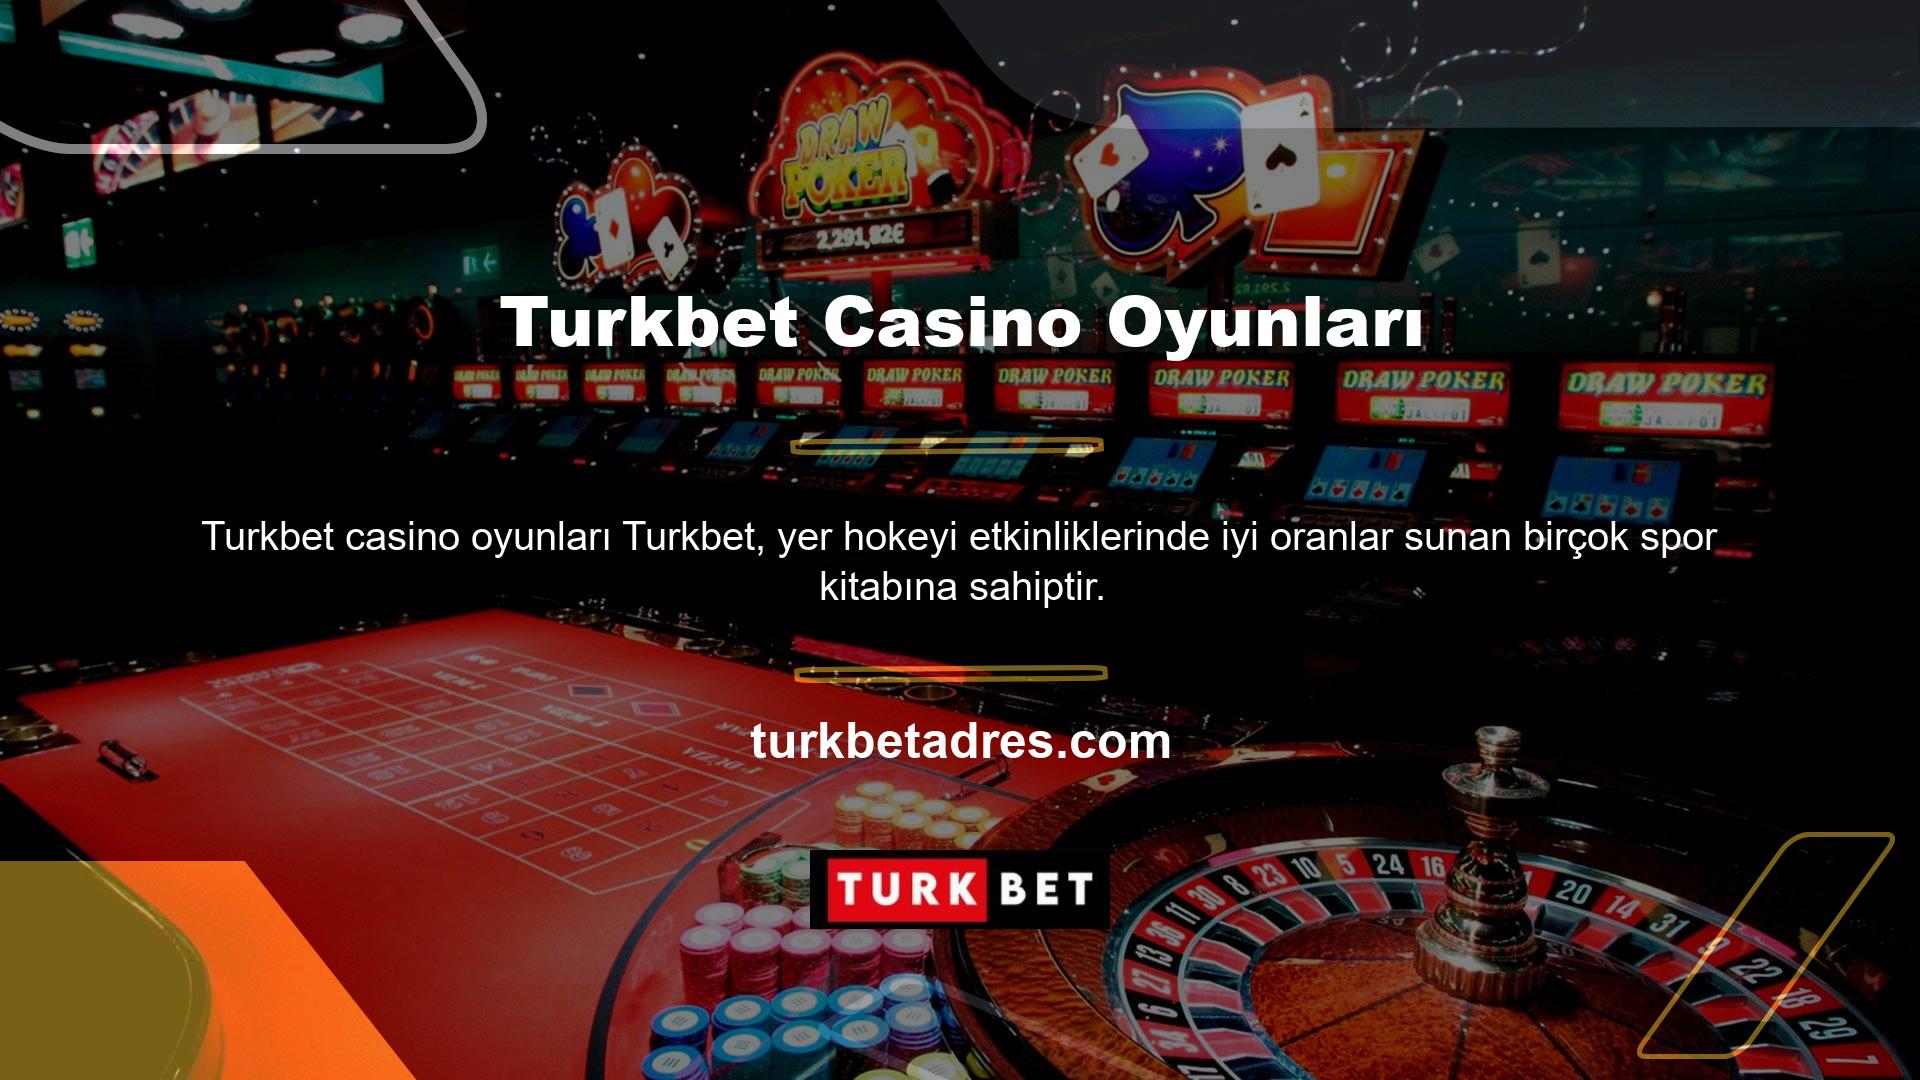 Turkbet, son derece düşük komisyon miktarları, gelişmiş para yatırma yöntemleri, göz alıcı bisiklet şeklindeki ödülleri ve oyun deneyimi ile hizmetiyle birçok casino oyununda eşsizdir